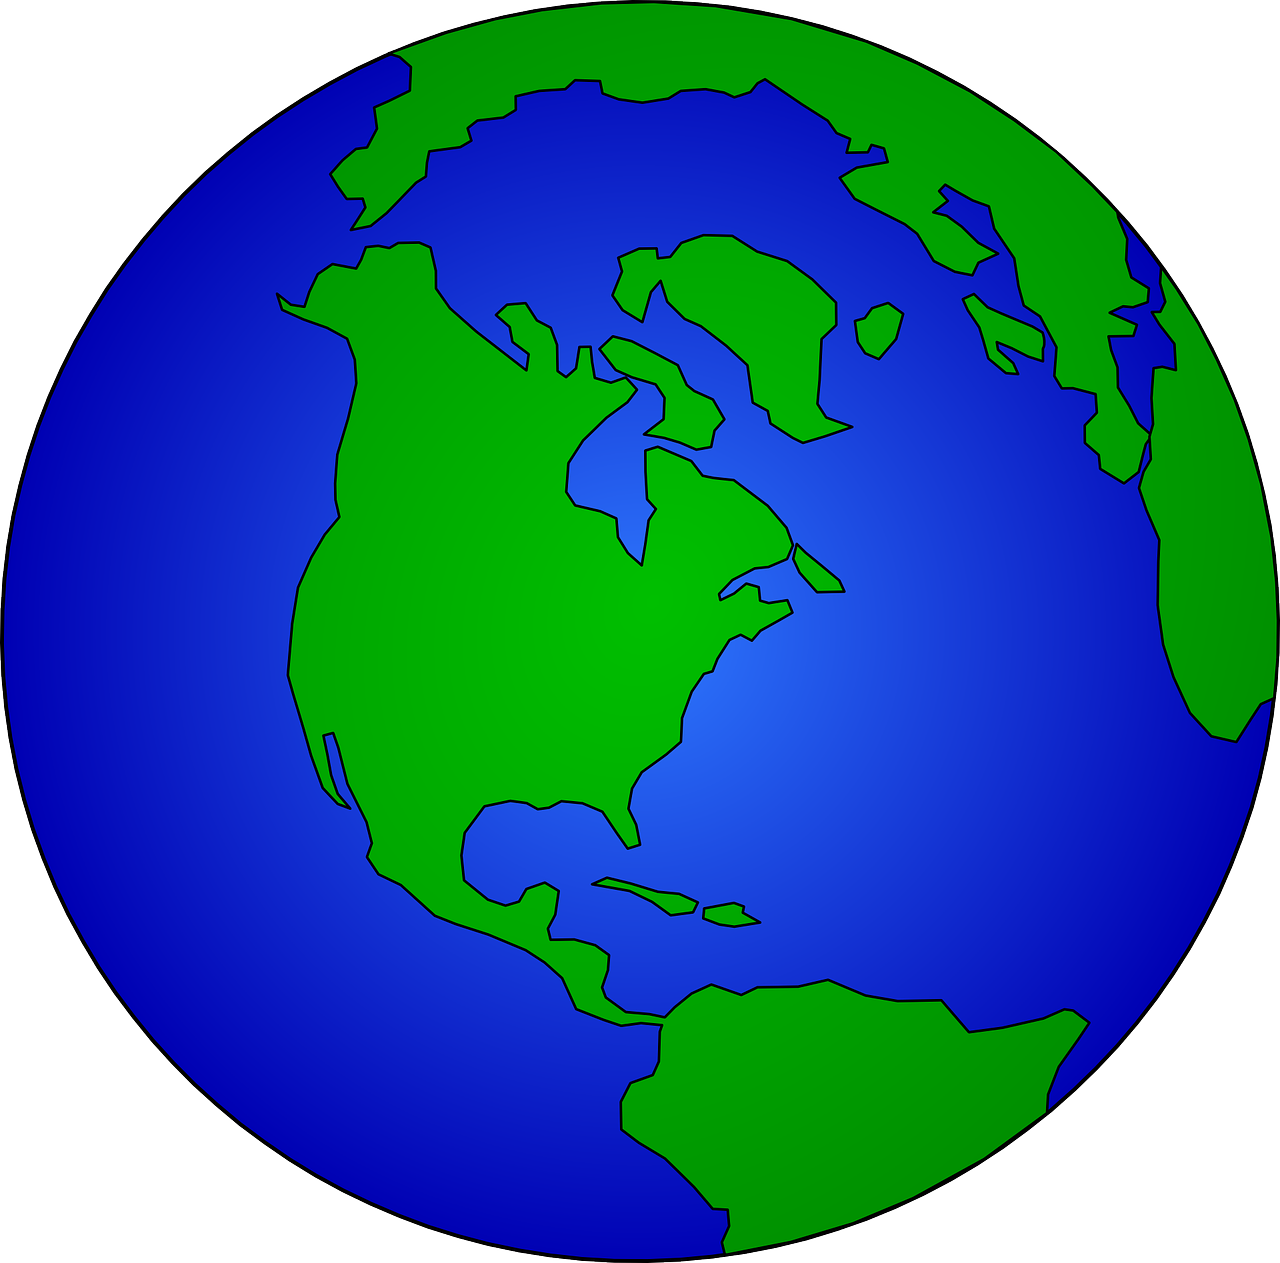 Žemė, Gaublys, Pasaulis, Amerikietis, Geografija, Planeta, Visuotinis, Terra, Sfera, Tarptautinis